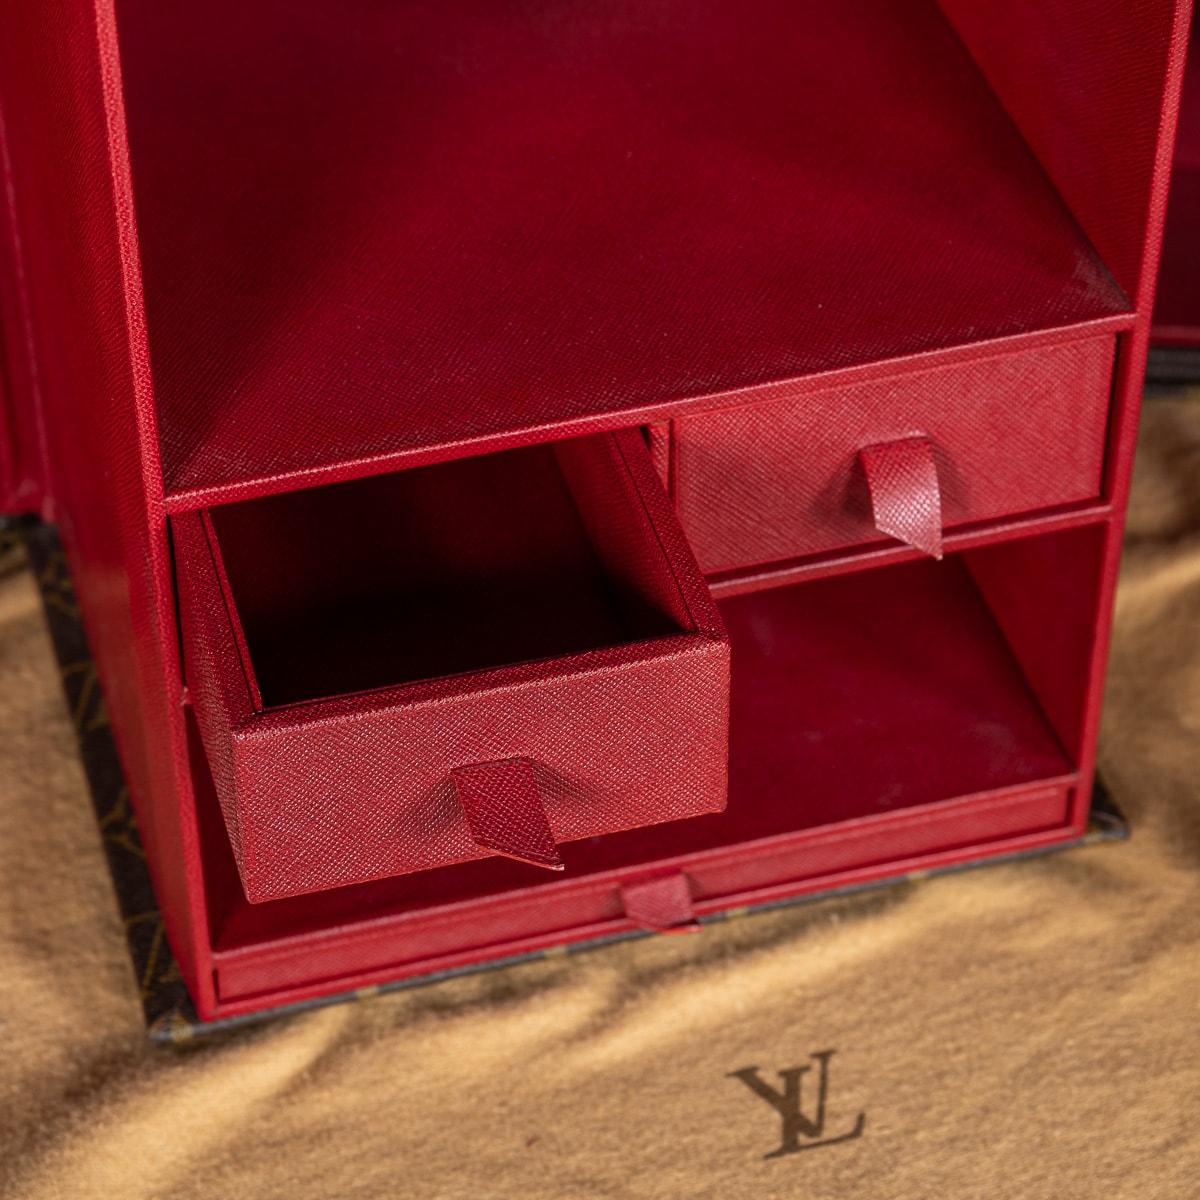 Rare malle Louis Vuitton 